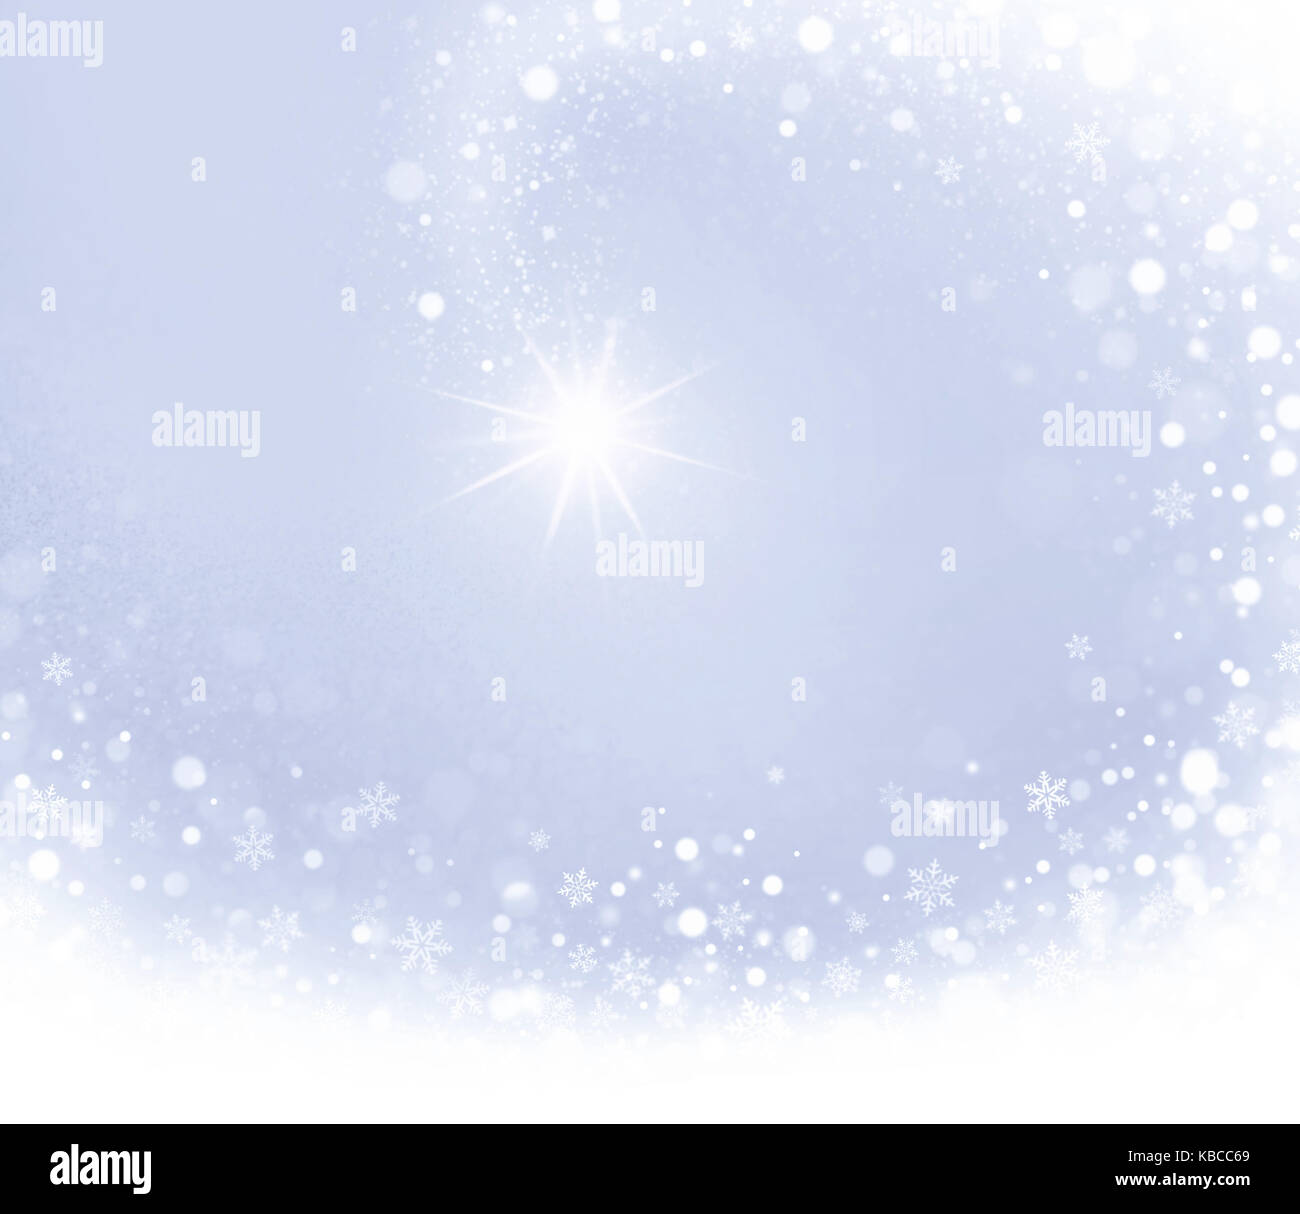 Estrella fugaz que brilla a través de un fondo de navidad de plata Foto de stock